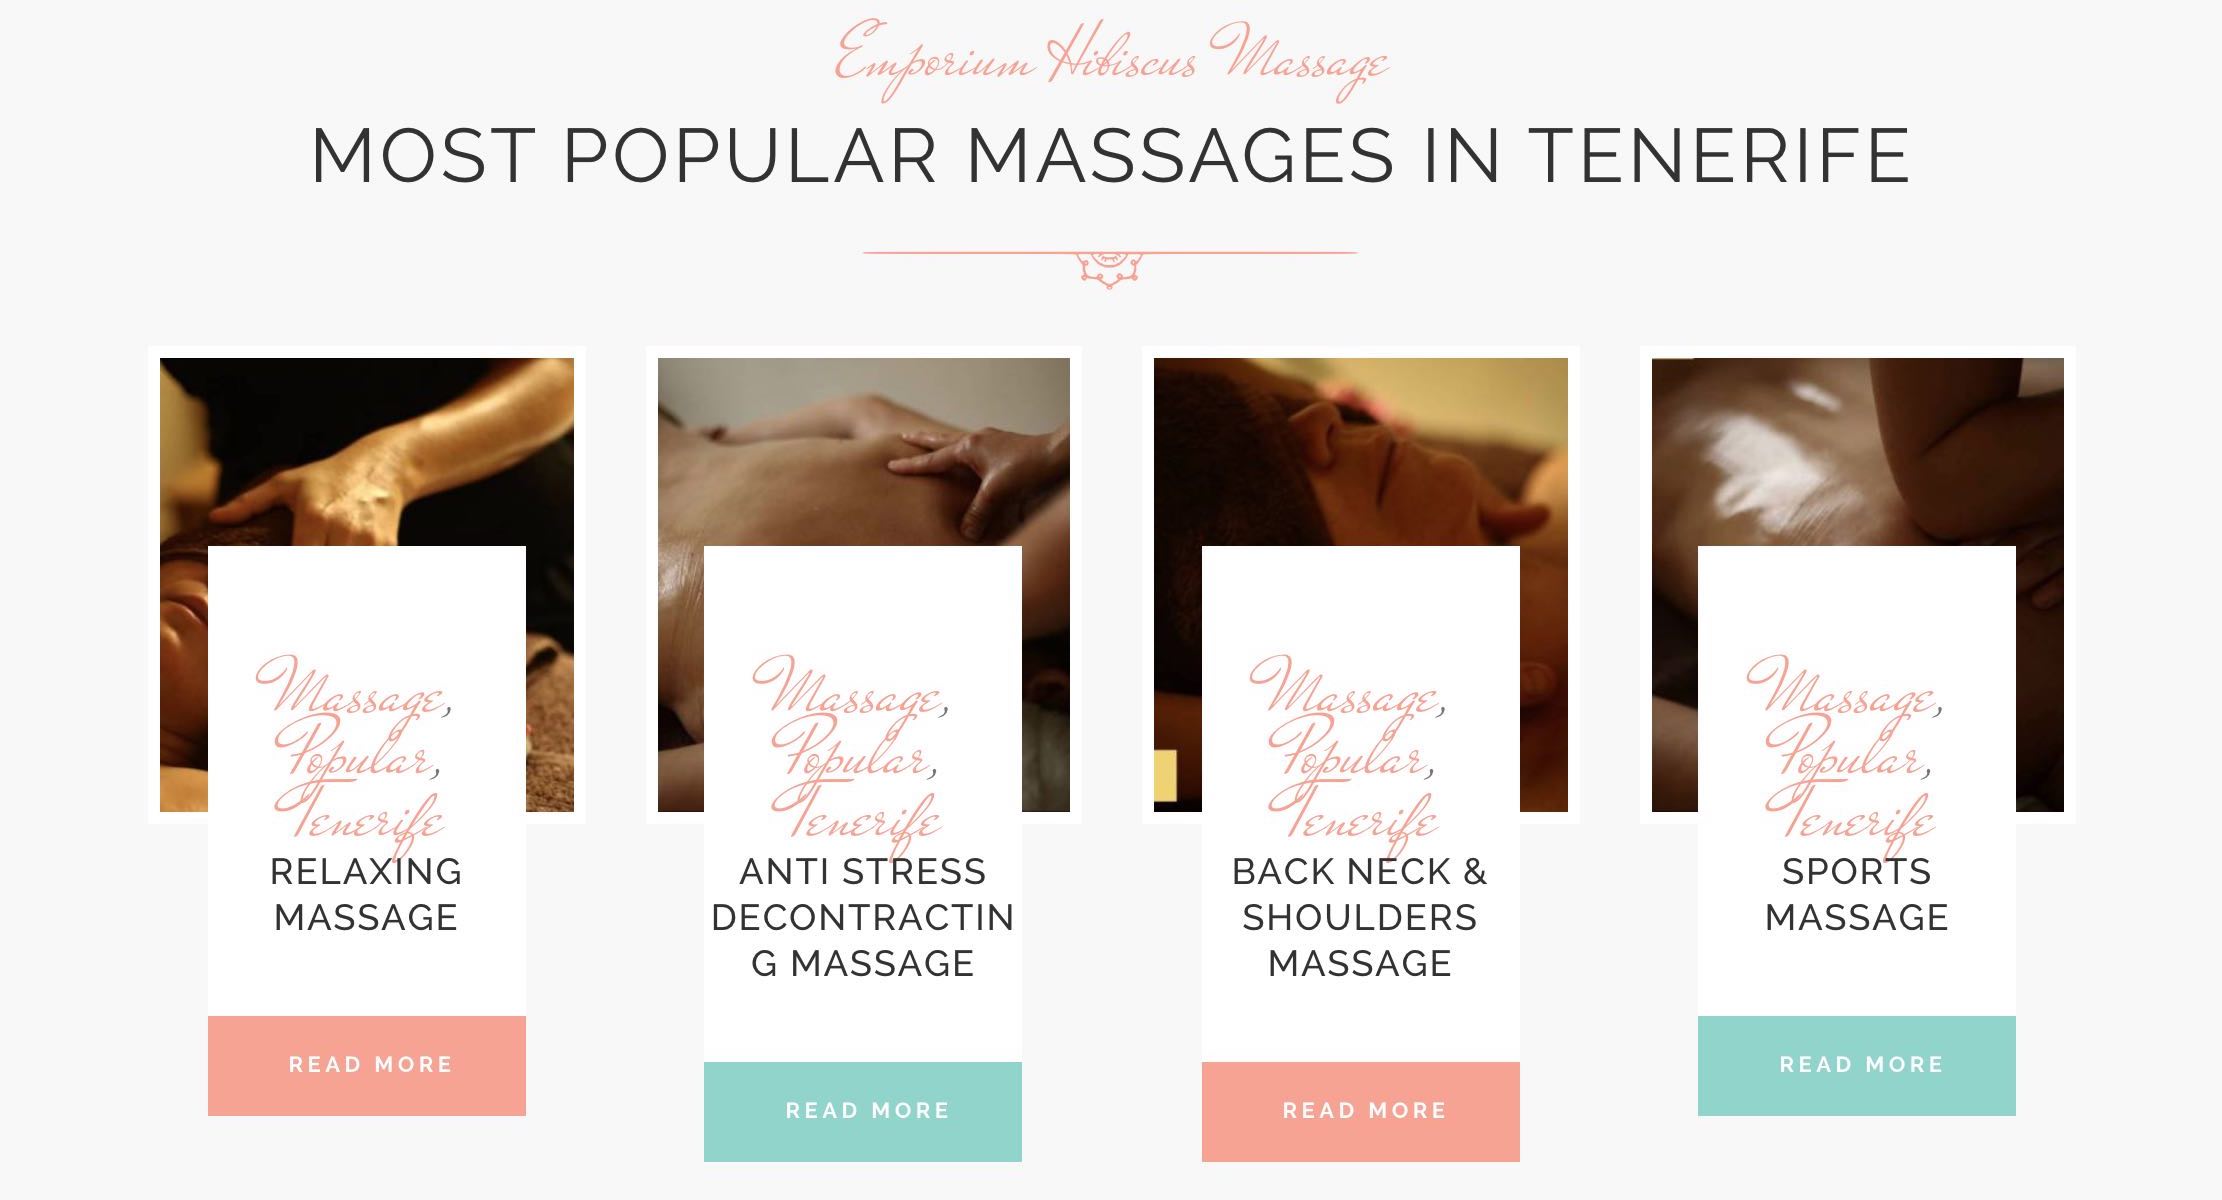 Diseño Web Wordpress y Posicionamiento en Google - Emporium Hibiscus Massage Tenerife